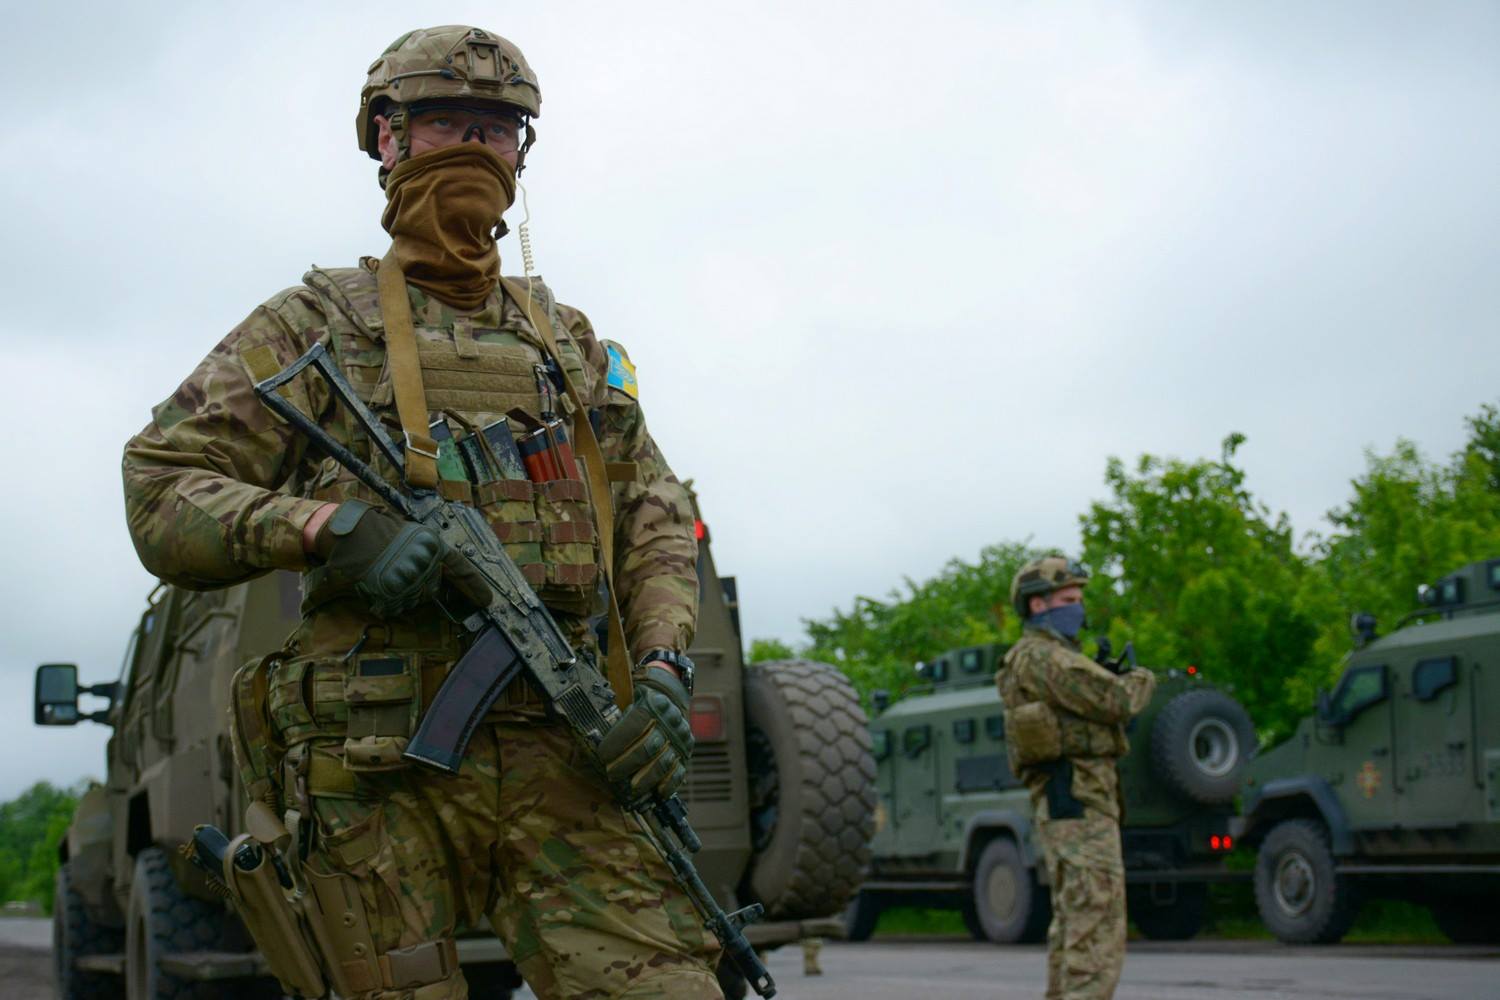 Обострение на Донбассе: боевики вновь принимают радикальные действия по отношению к Украине